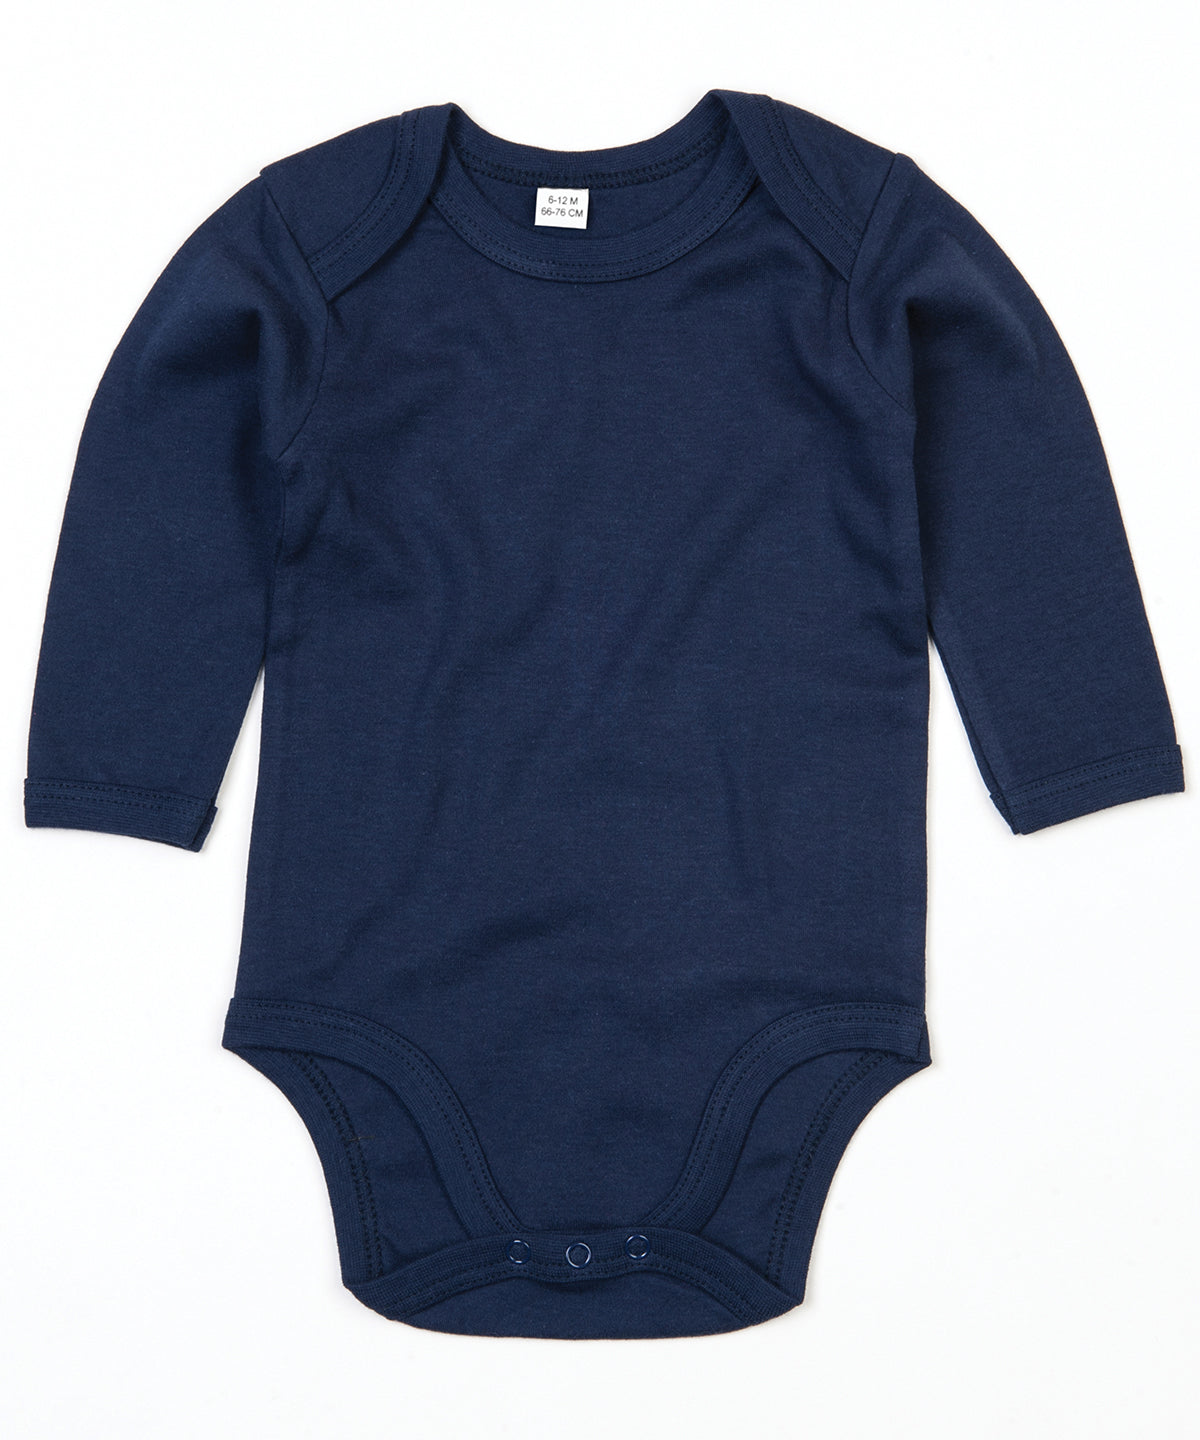 Personalised Bodysuits - Light Blue Babybugz Baby organic long sleeve bodysuit